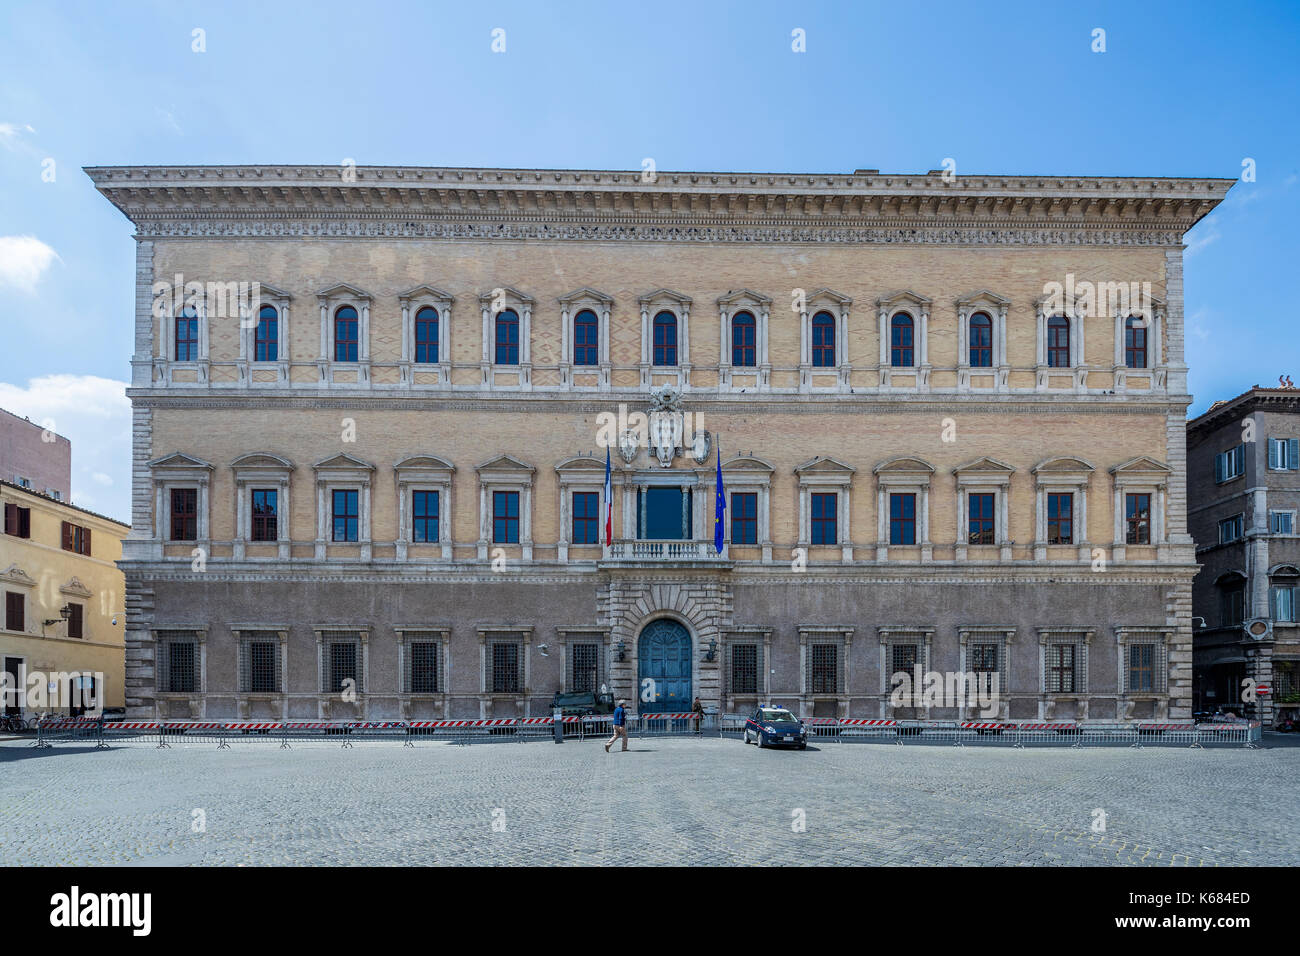 Palazzo farnese roma immagini e fotografie stock ad alta risoluzione - Alamy